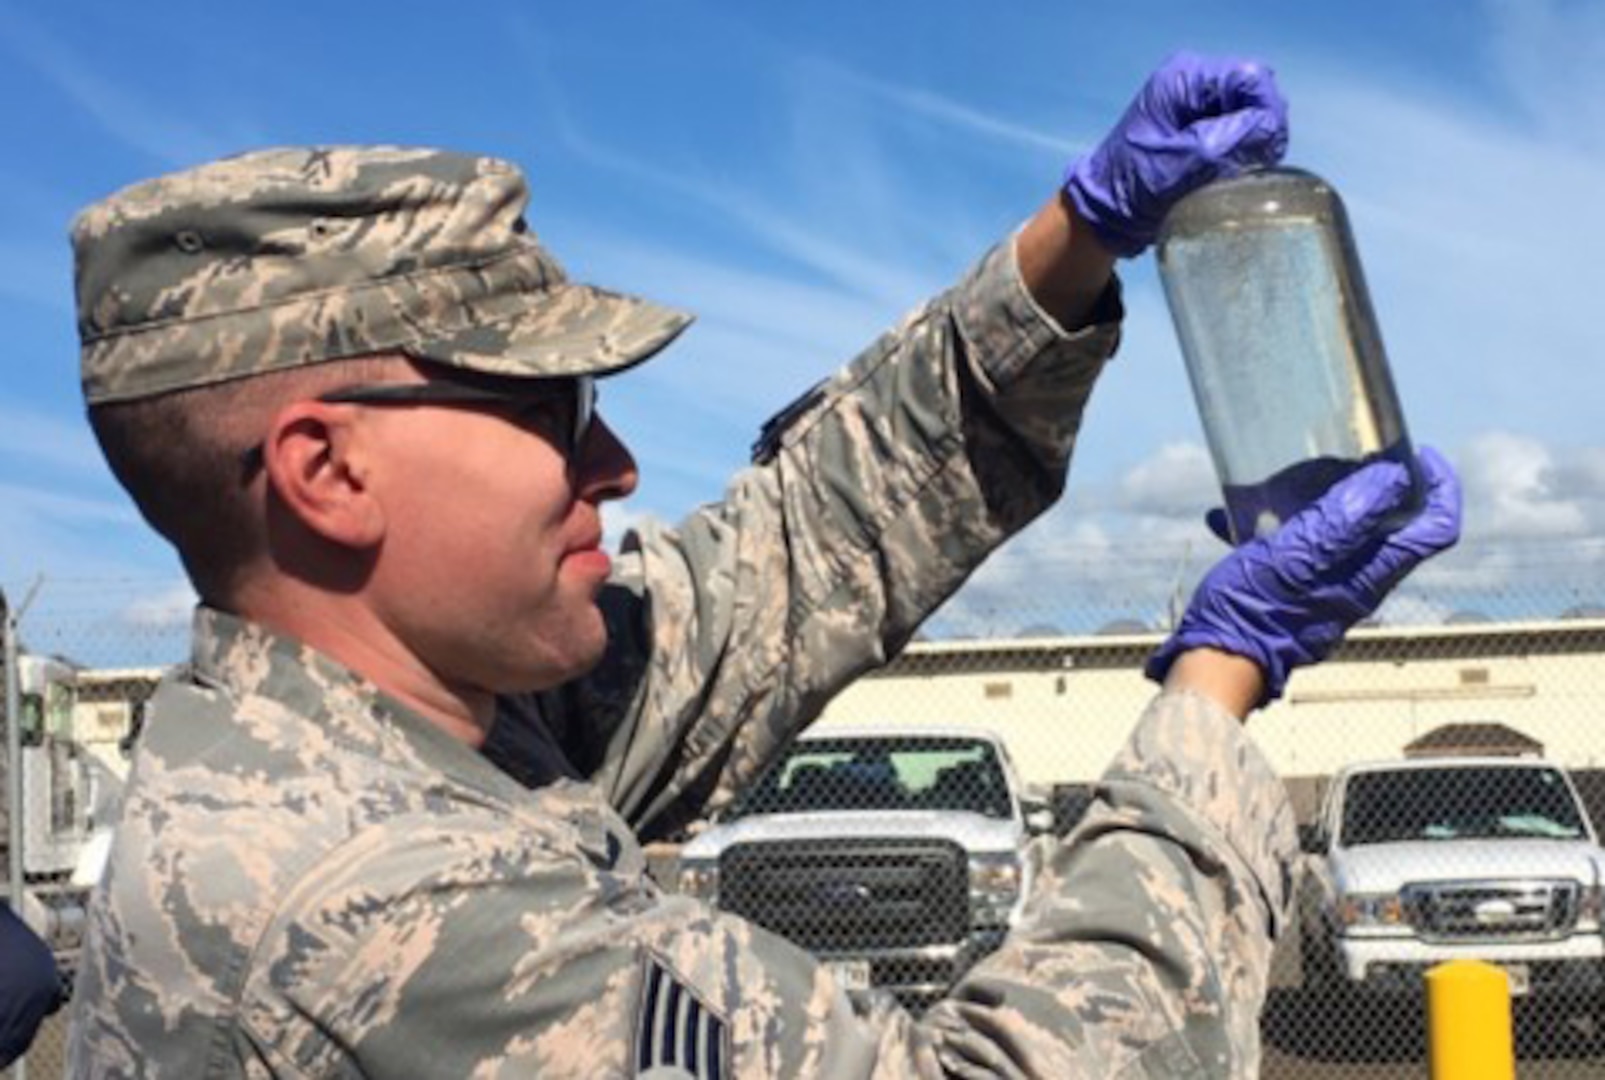 man in uniform examines a fuel sample